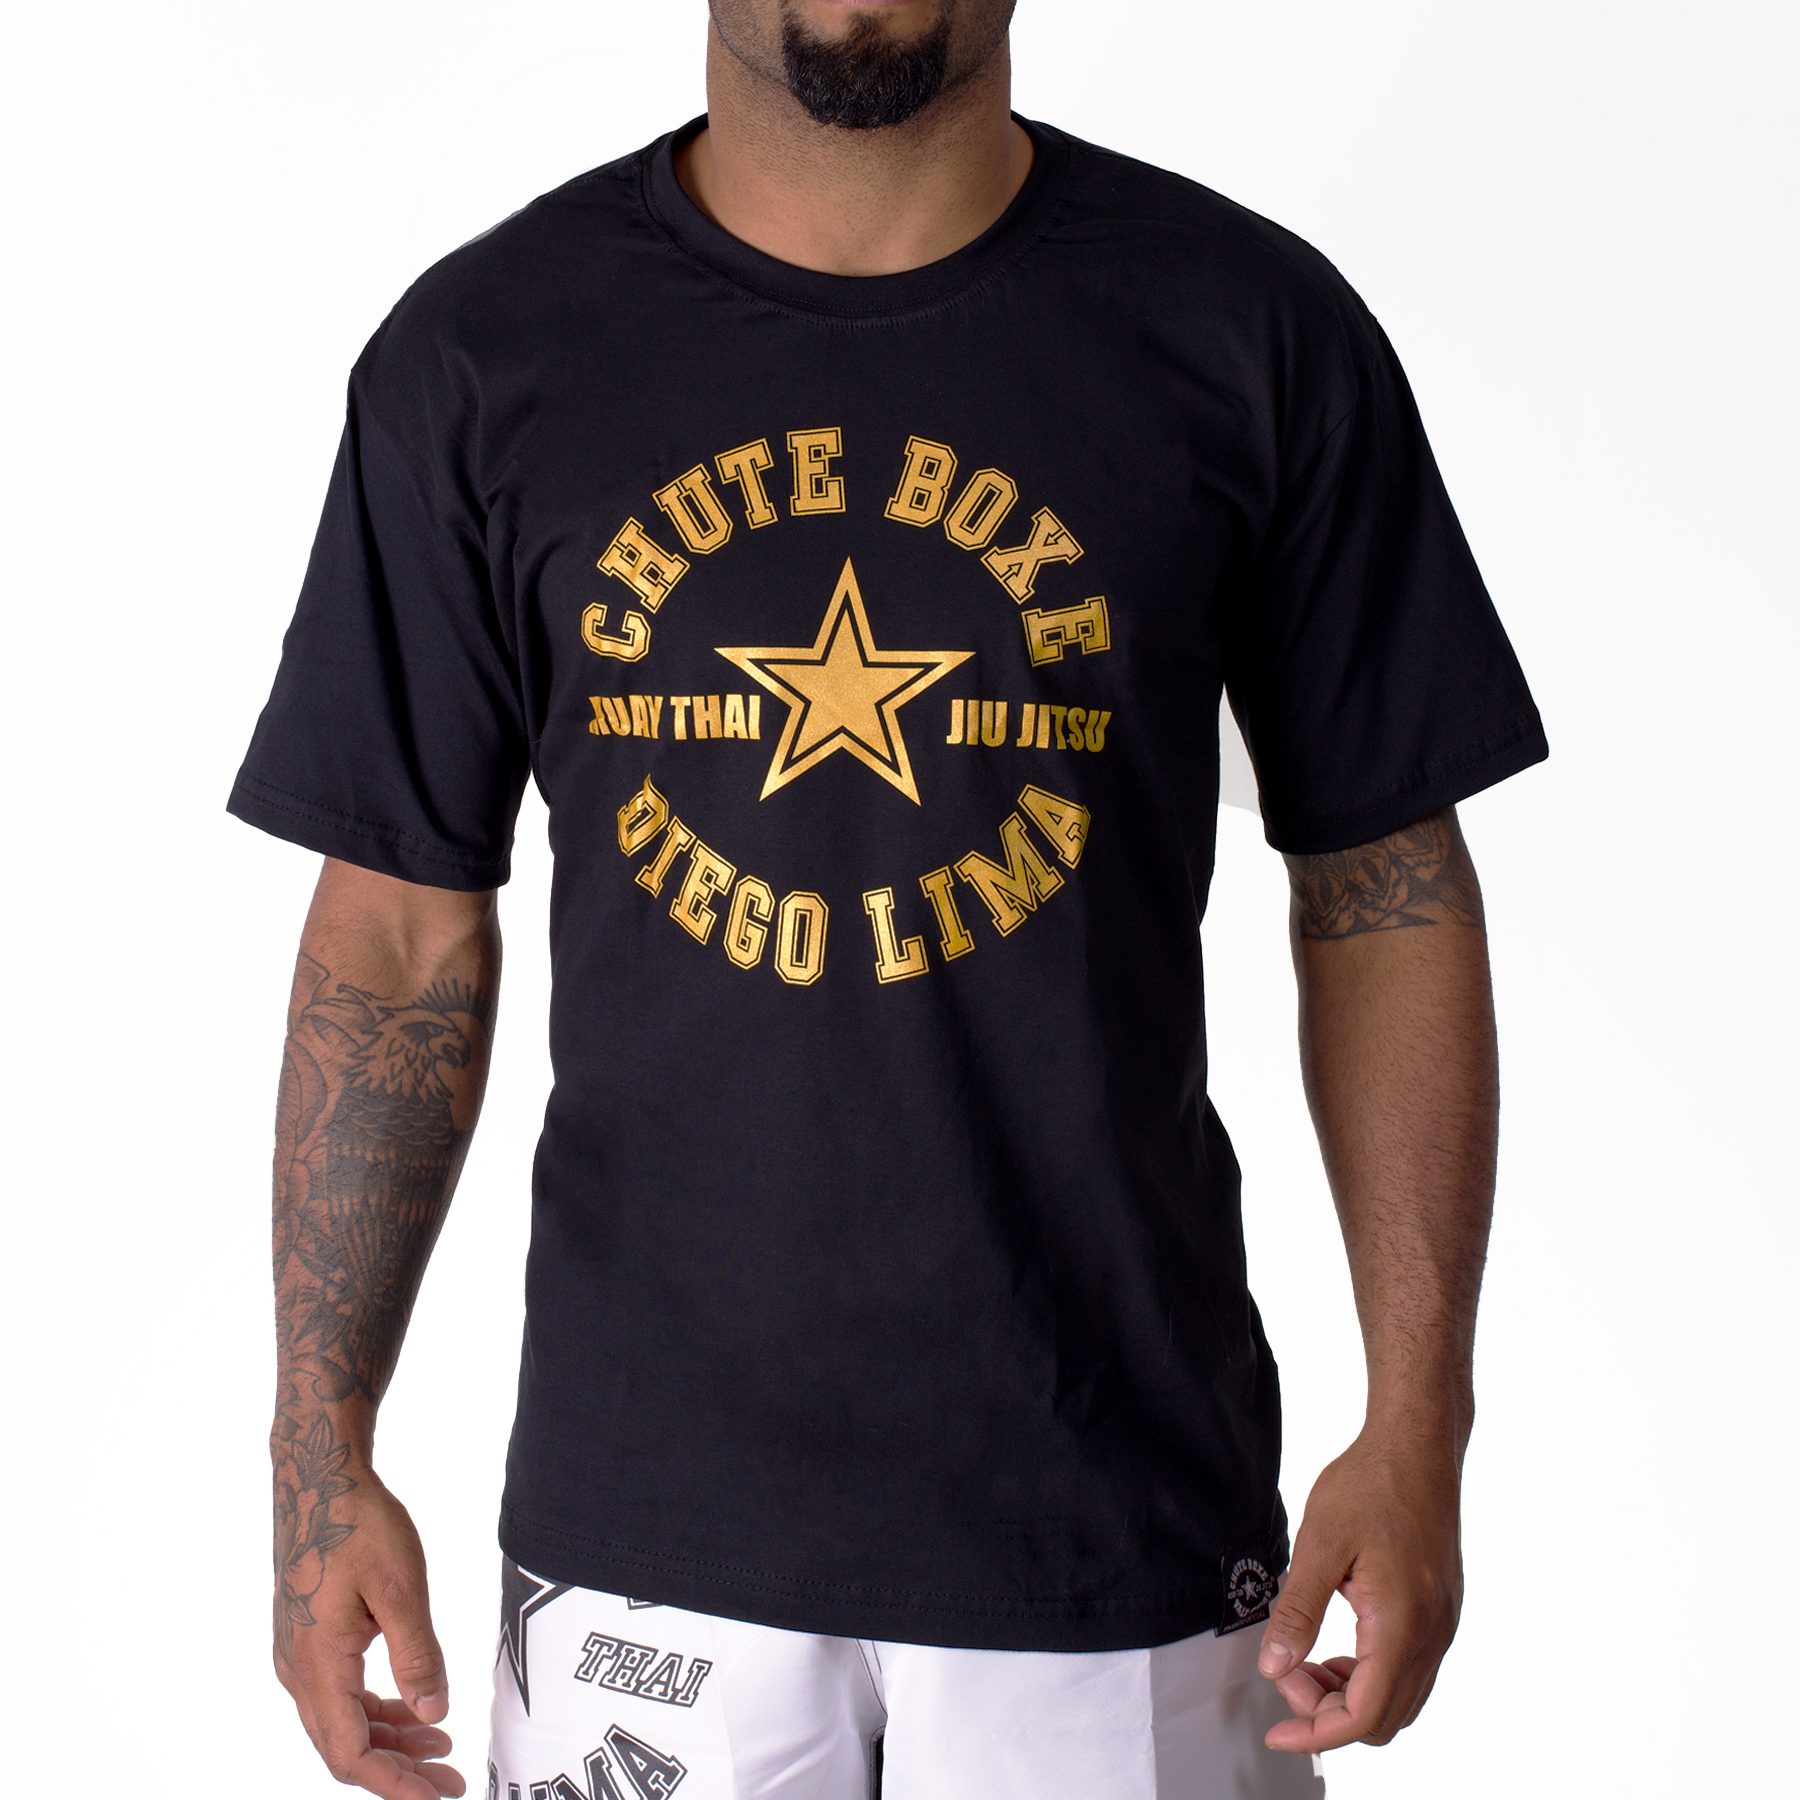 Camiseta Chute Boxe Diego Lima Preta com Dourado